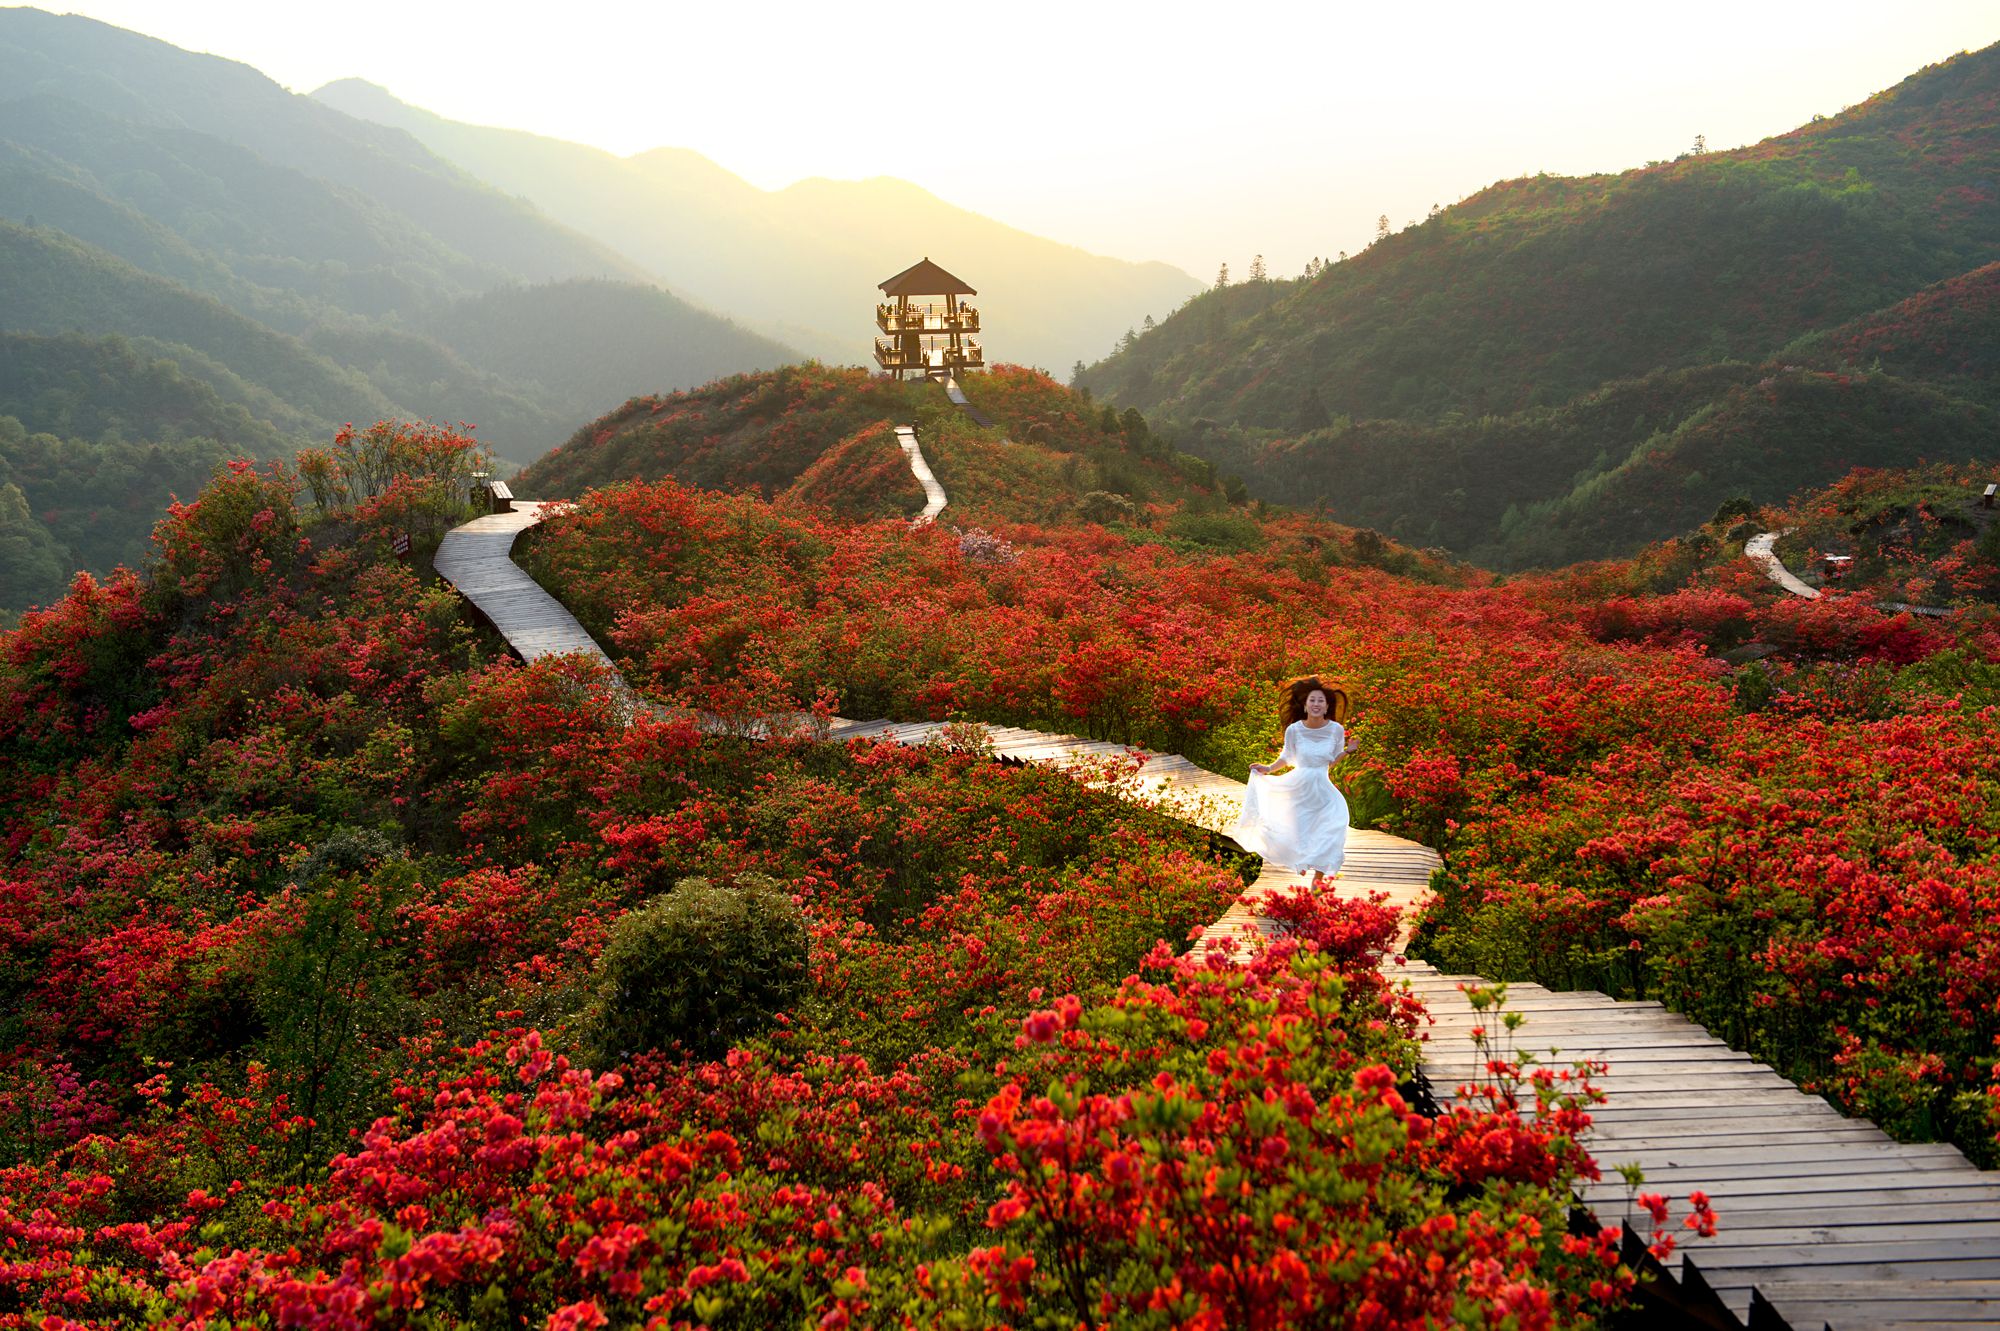 【携程攻略】禹州大鸿寨风景区景点,风景还不错，这个季节适合去看红叶，这里漫山遍野的红叶比山花还烂漫…